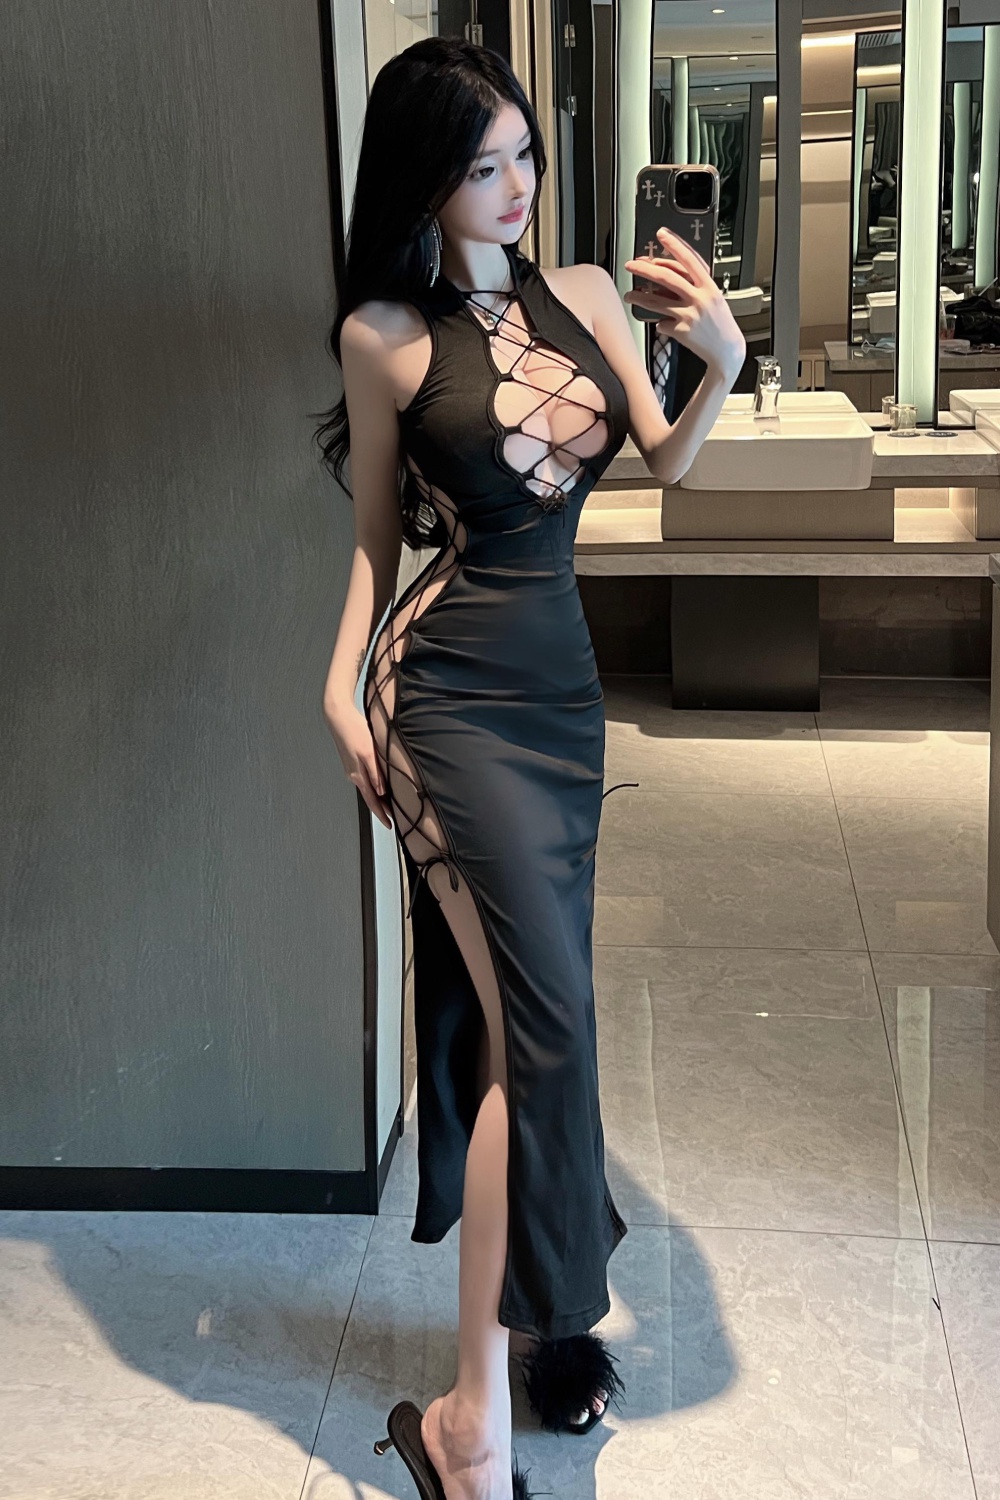 Spicegirl hollow formal dress black show chest long dress